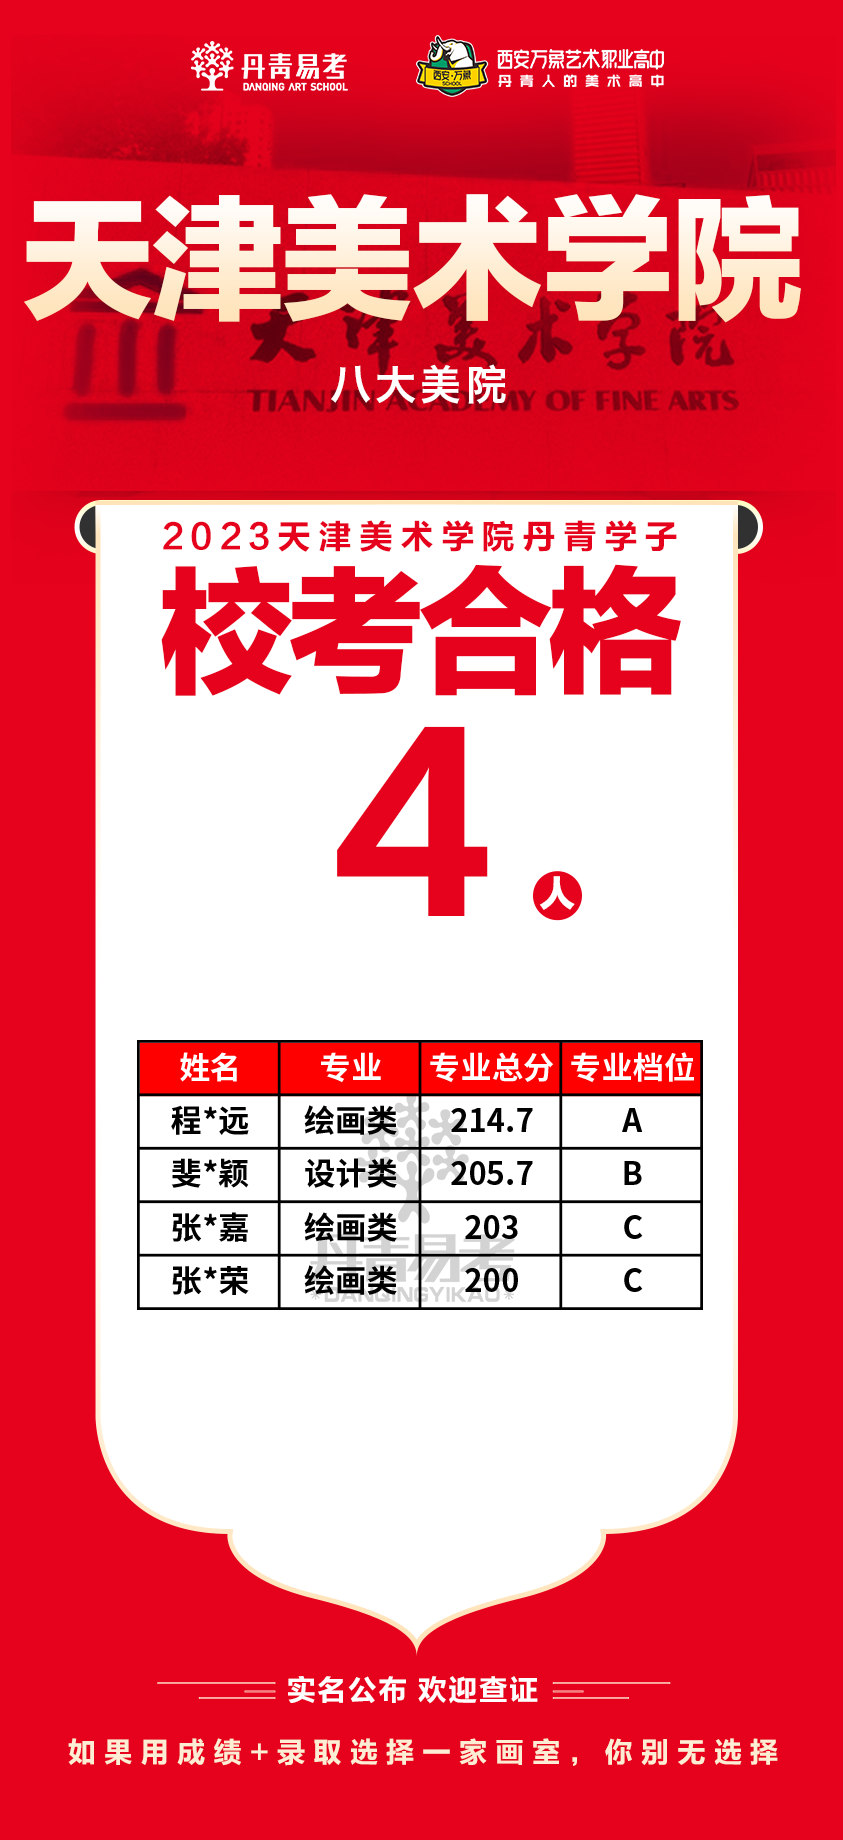 4丹青易考2023年天津美术学院校考合格人数4张.png